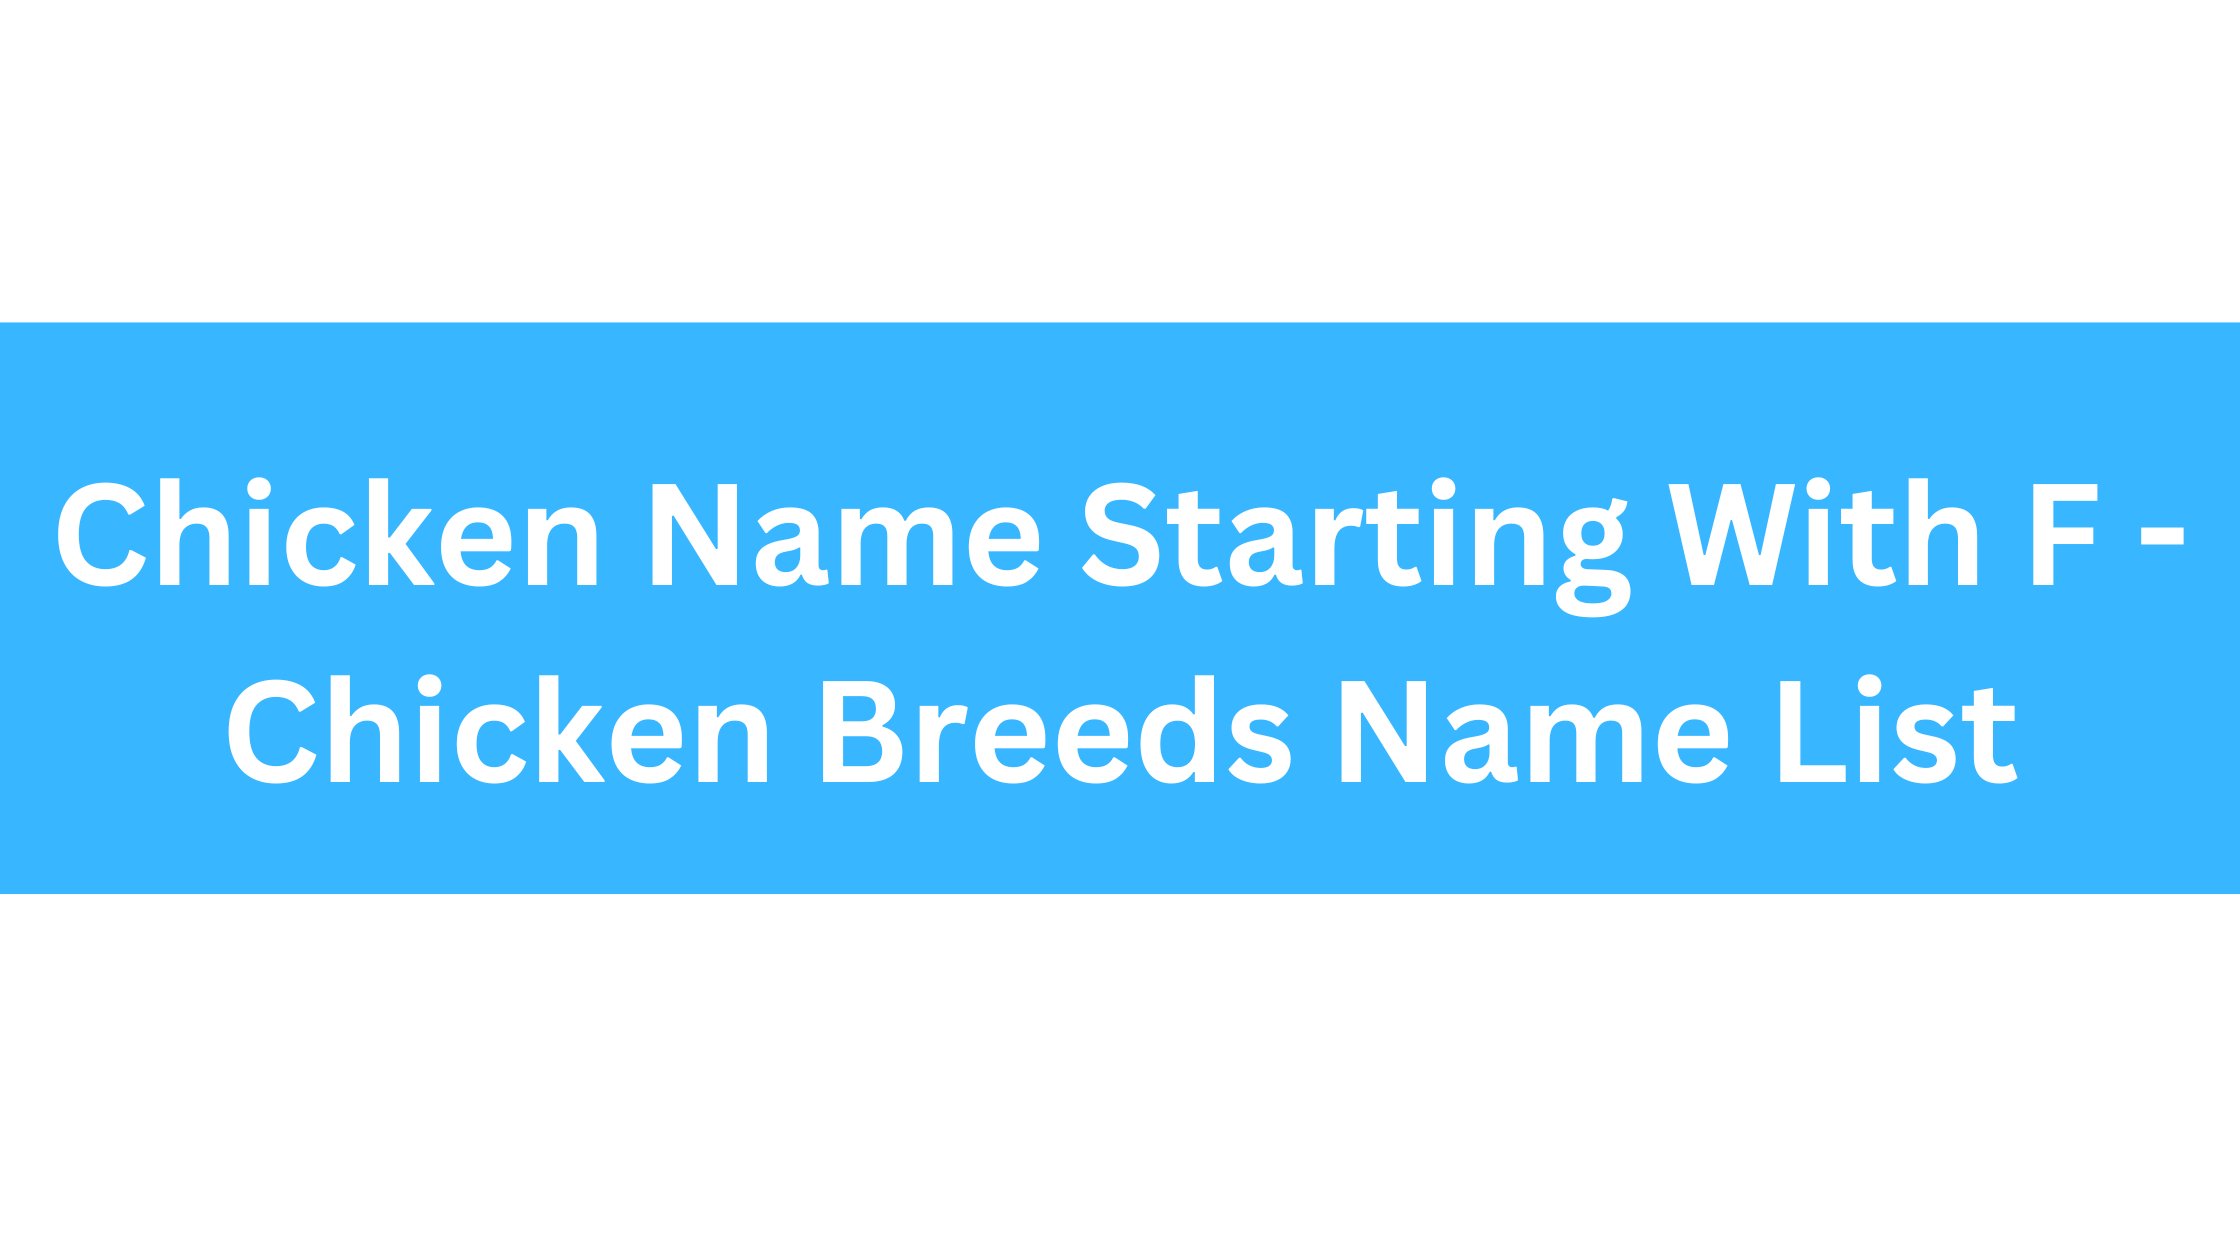 Chicken Breeds That Start With F